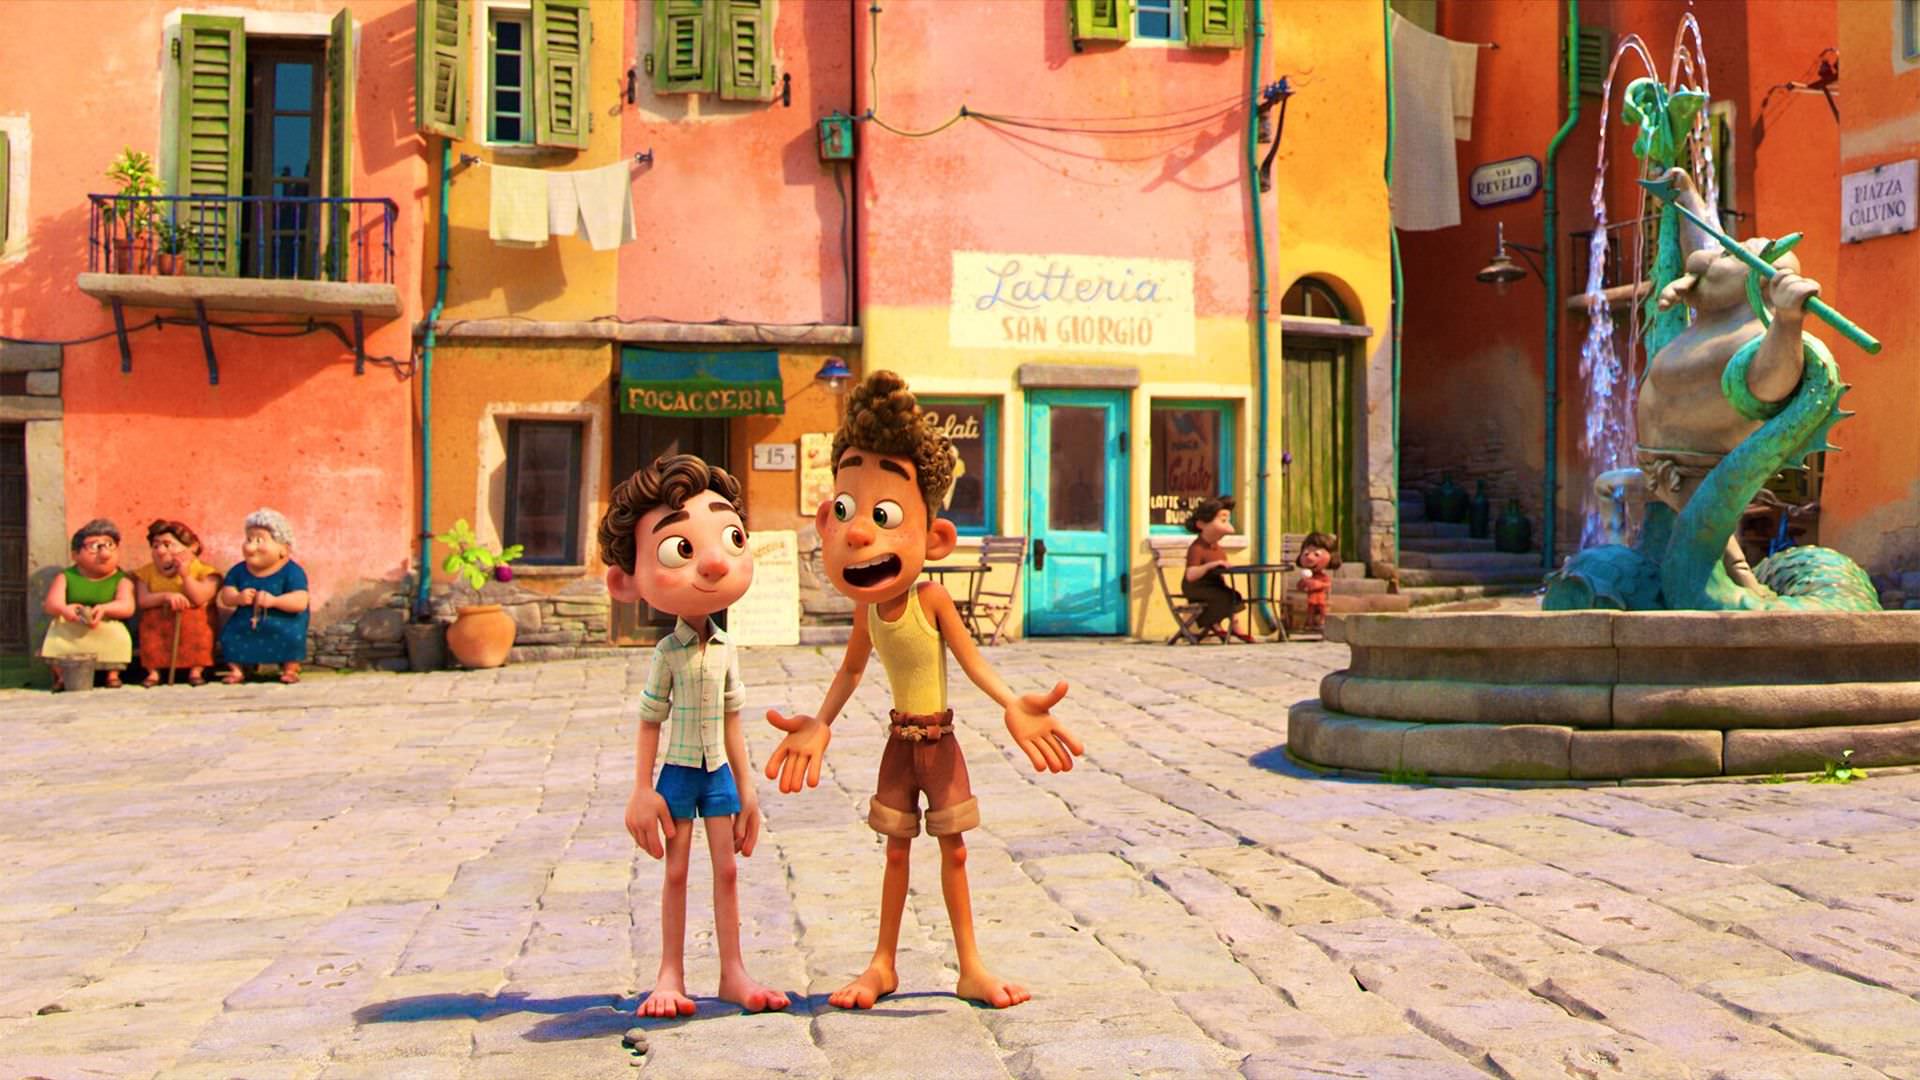 لوکا و آلبرتو در میدان شهری در ایتالیا در انیمیشن Luca؛ انیمیشن جدید پیکسار